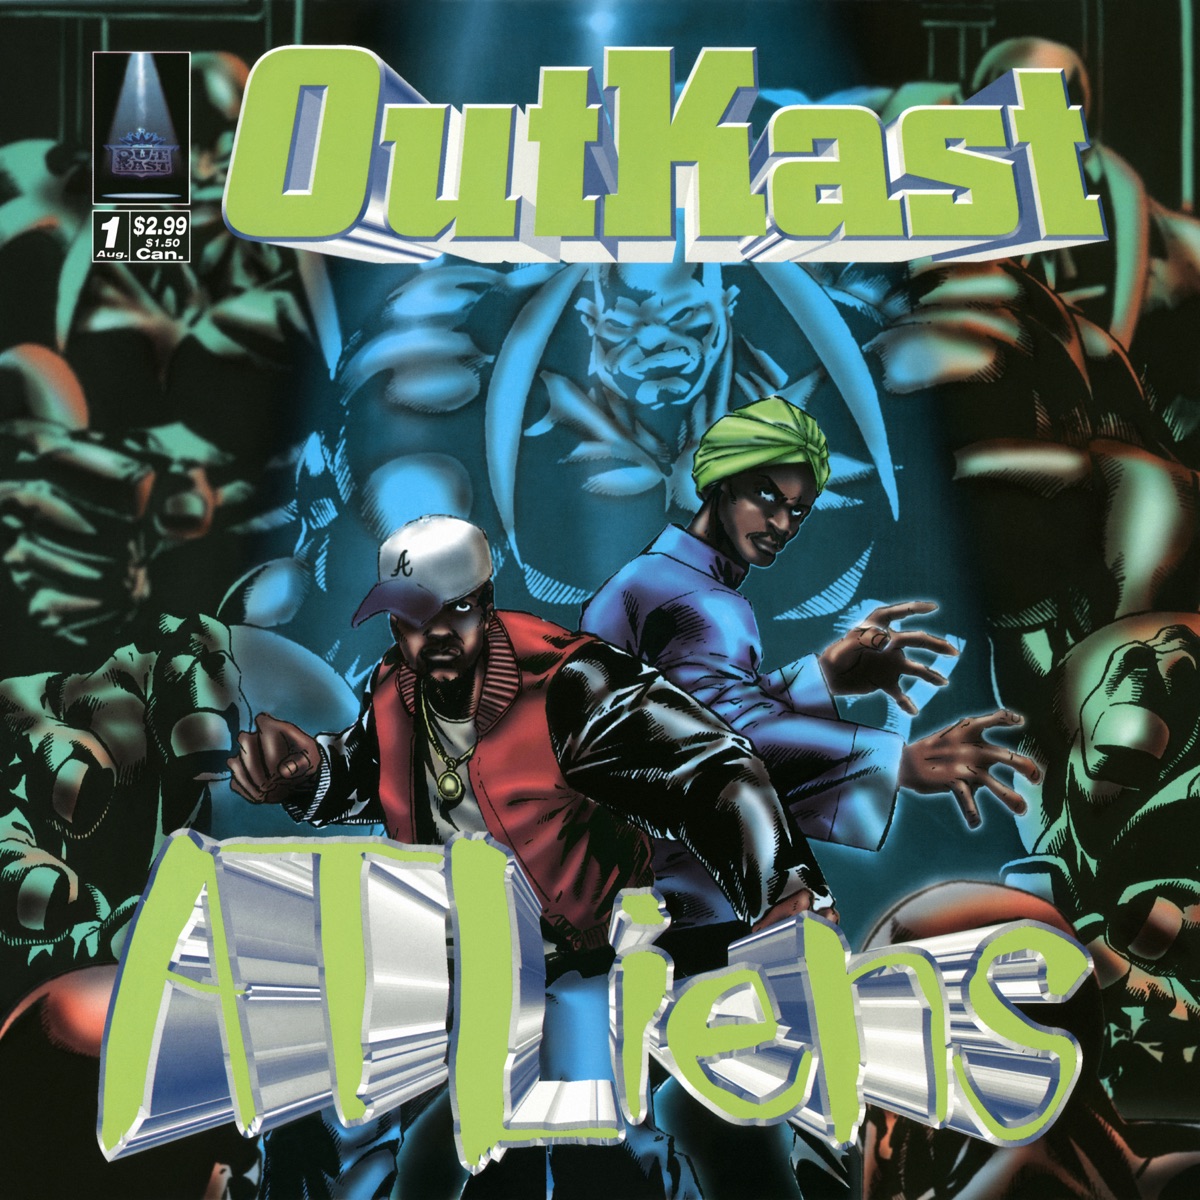 outkast album cover art